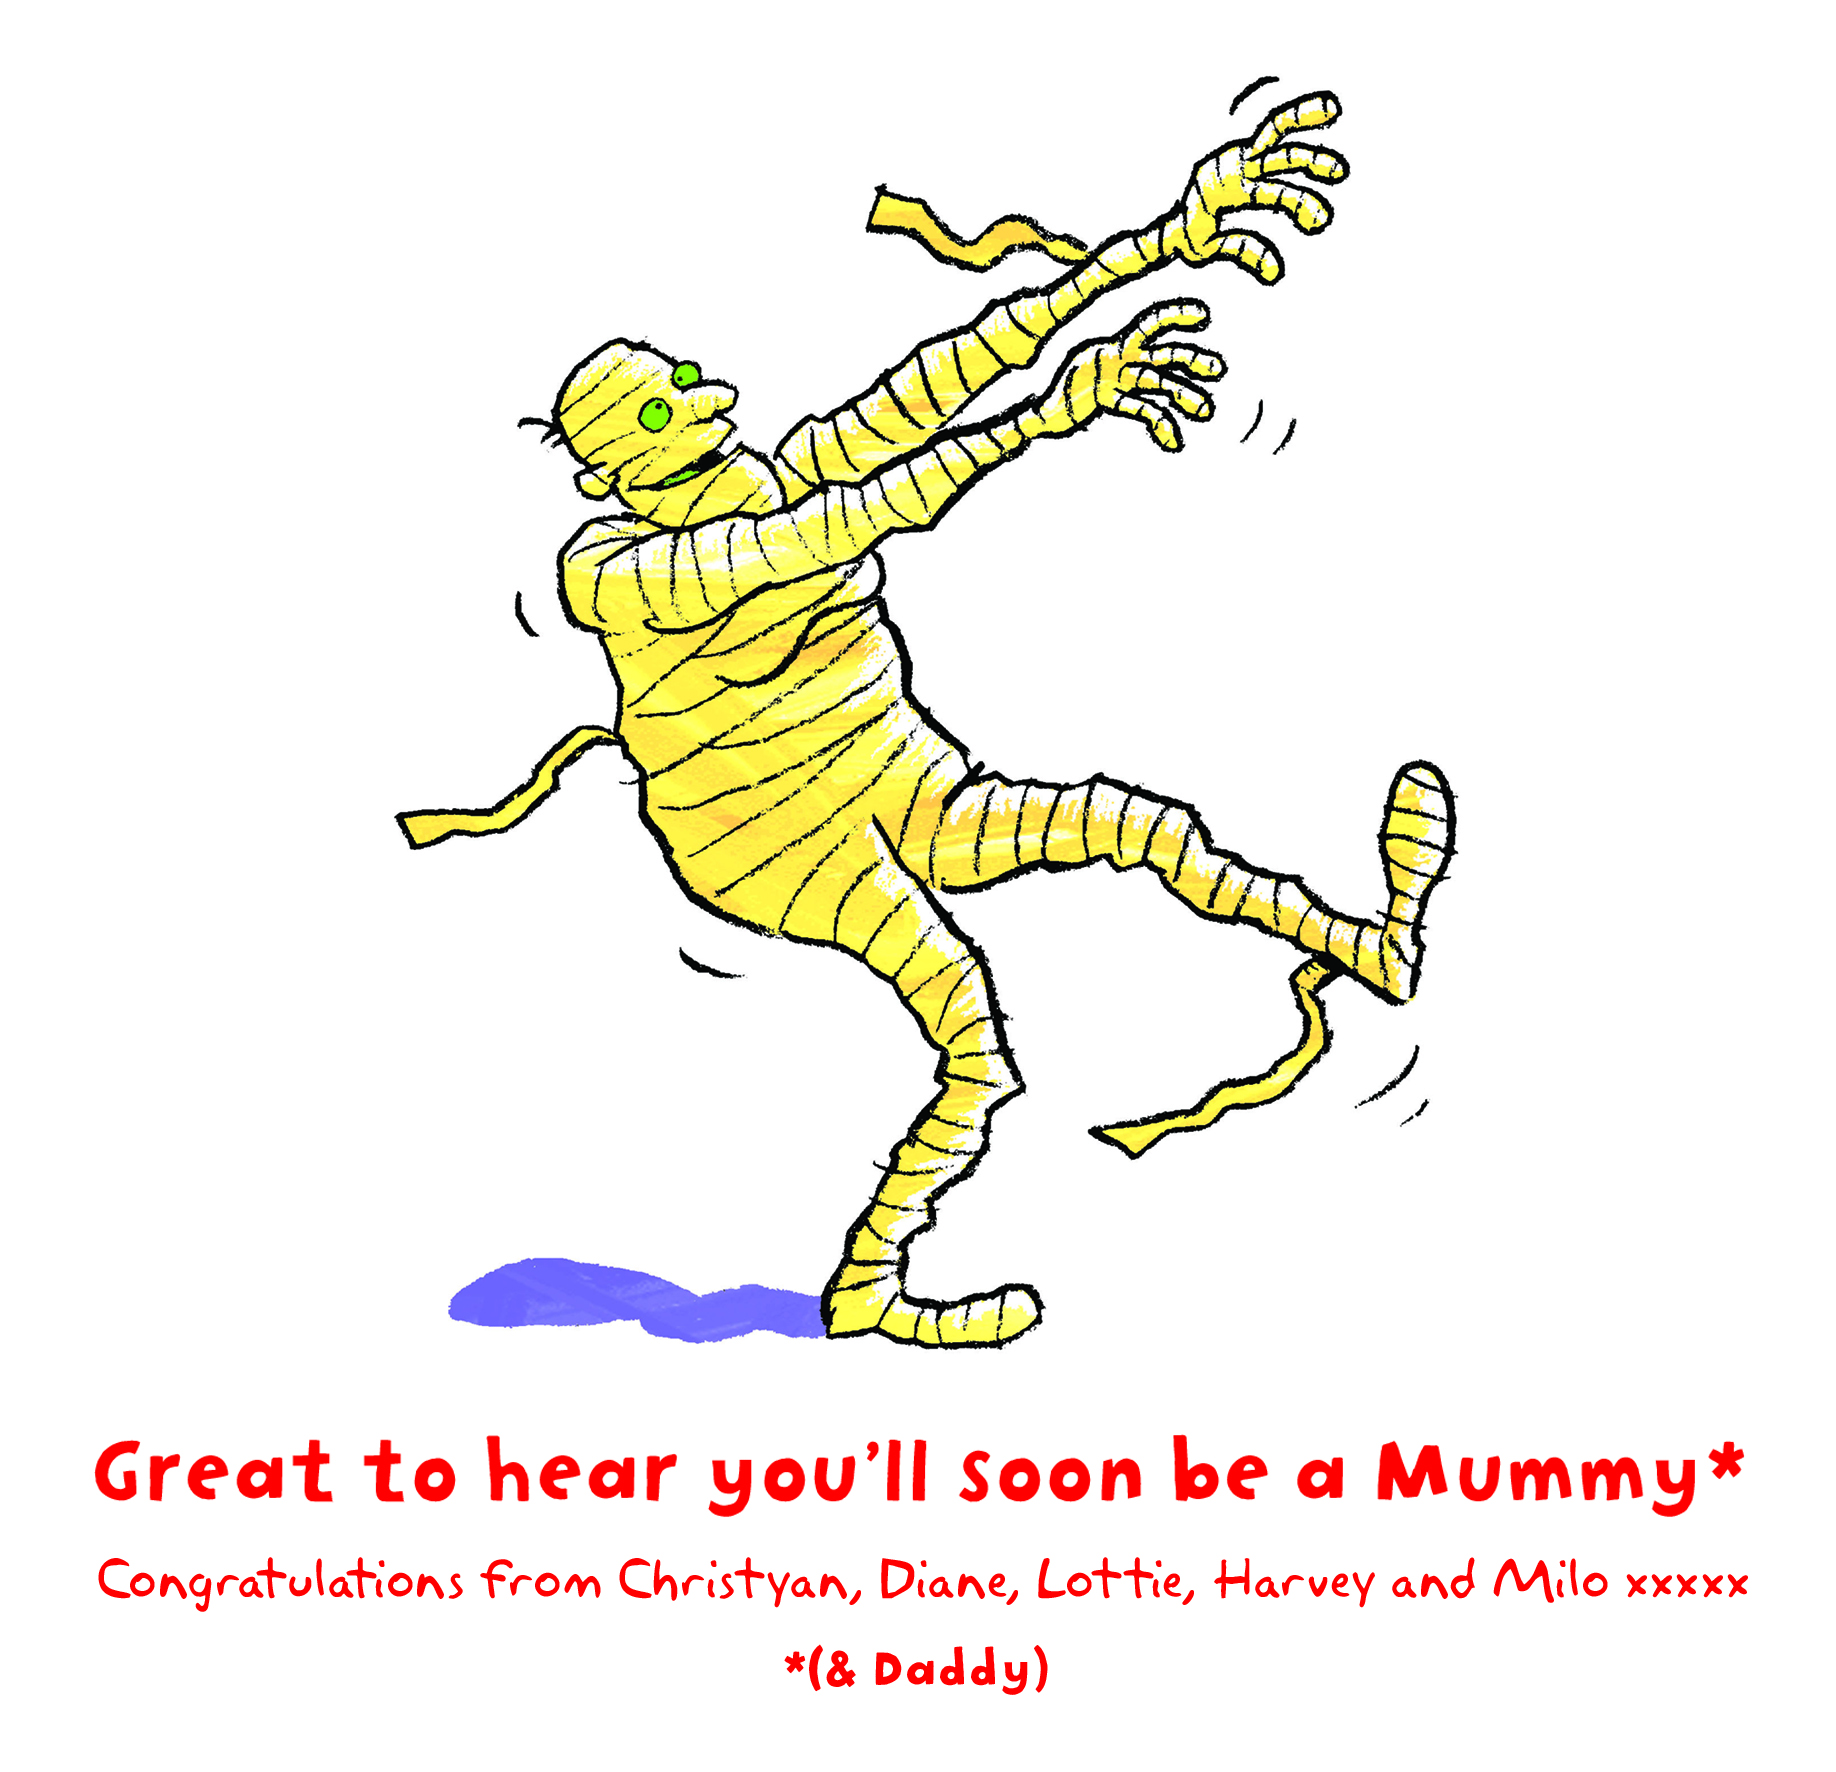 Mummy card copy.jpg